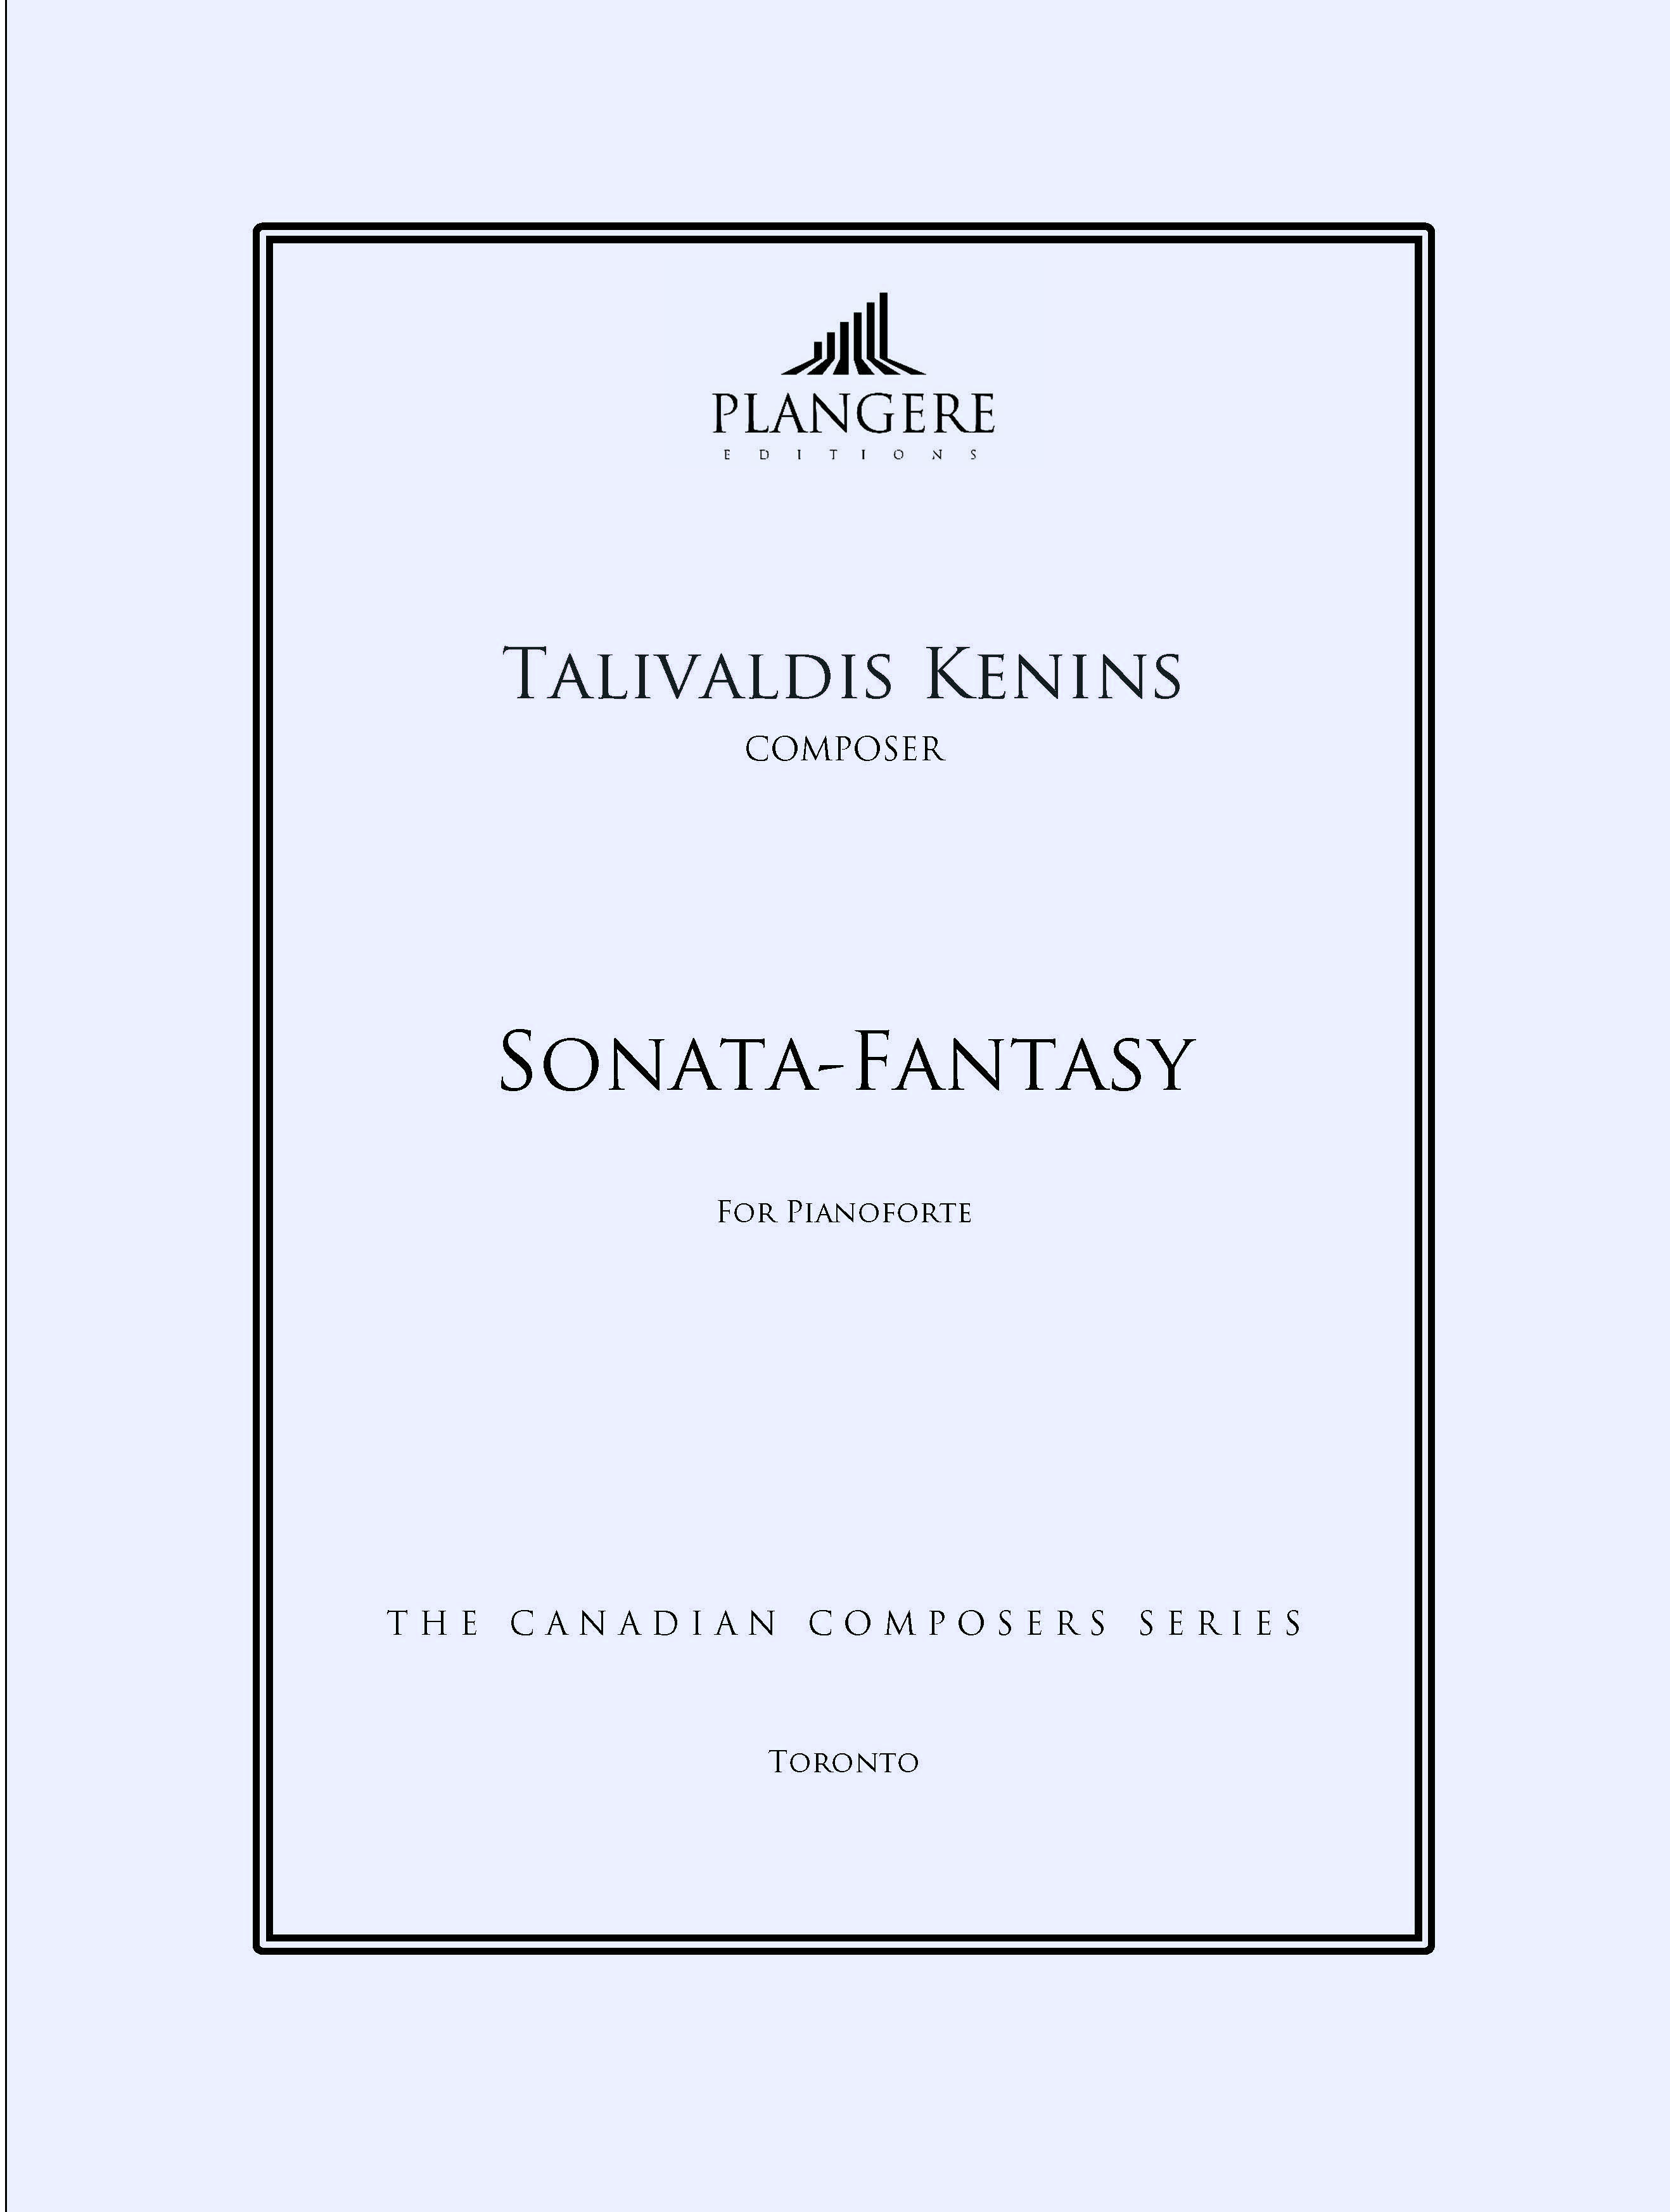 Sonata-Fantasy (2nd Sonata - 1981)